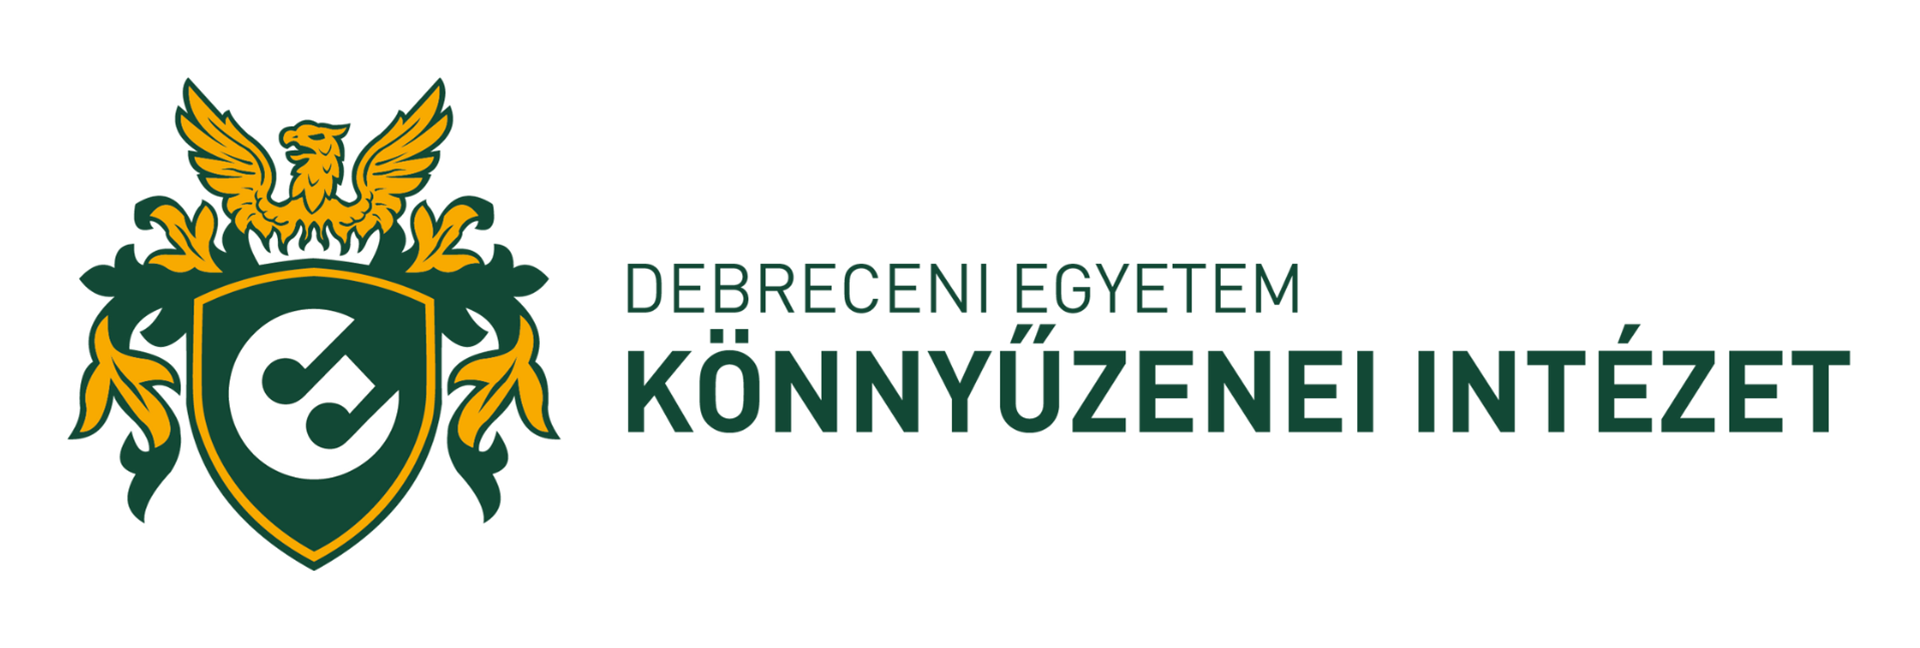 Könnyűzenei Intézet logó